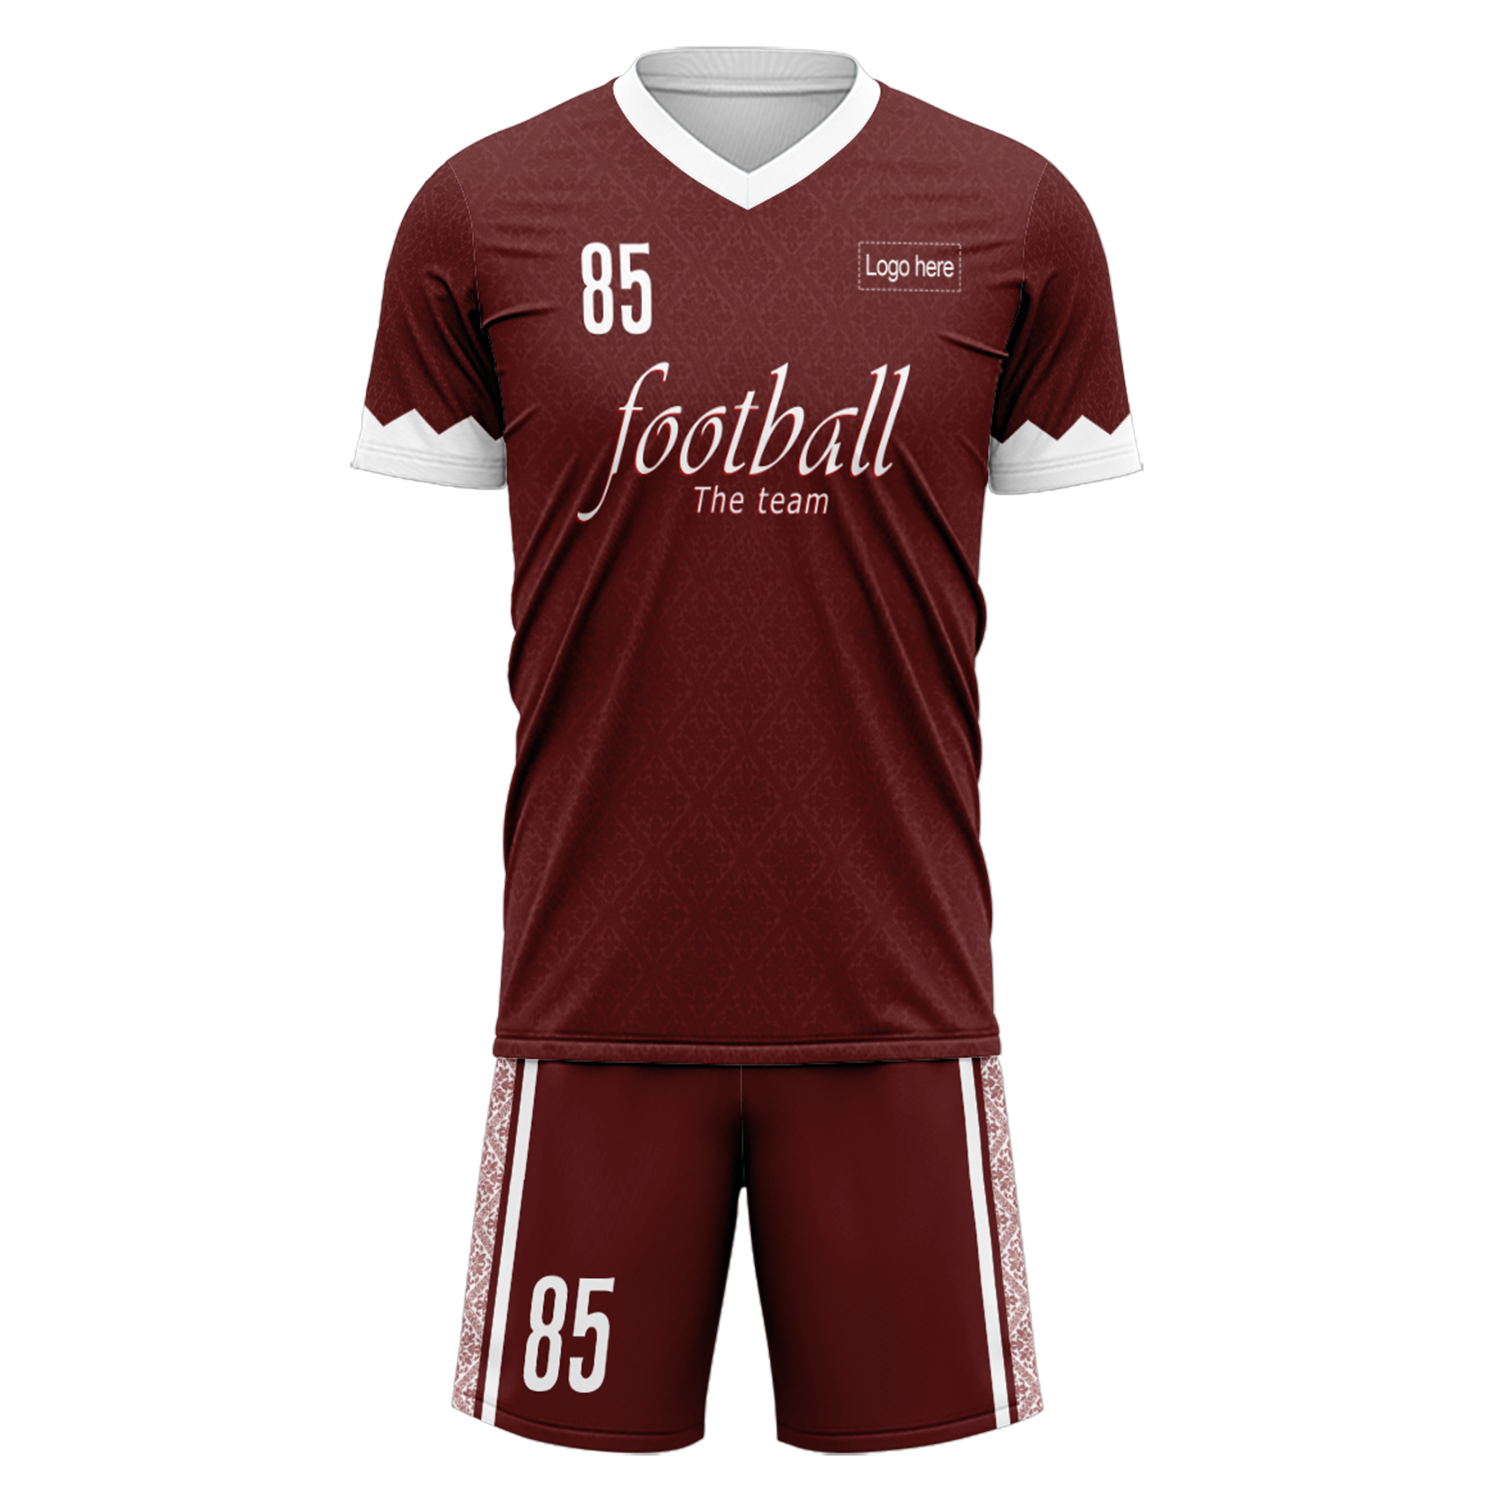 Trajes de fútbol personalizados del equipo de Qatar de la Copa Mundial 2022